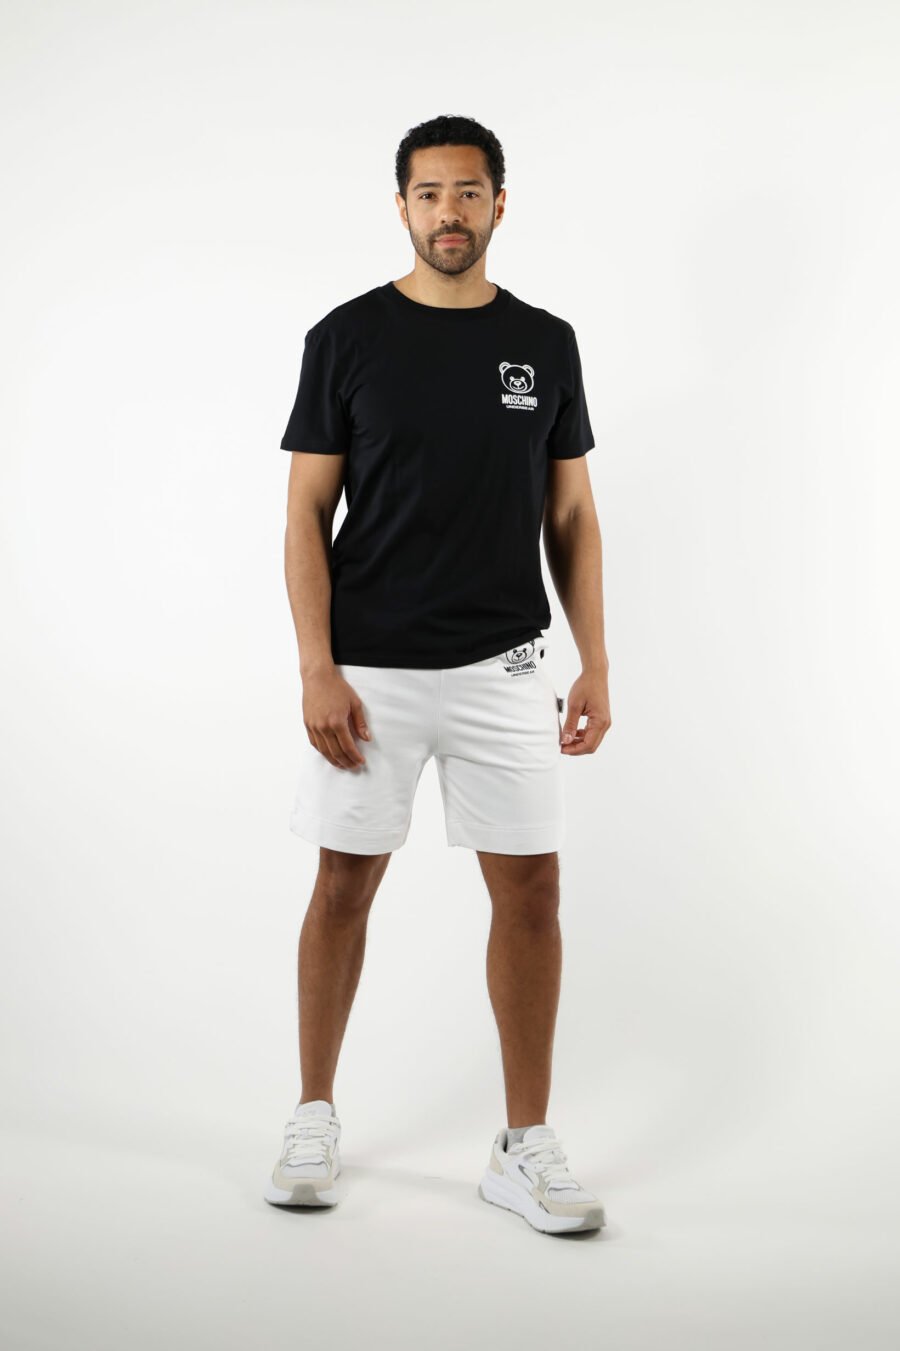 Pantalón de chándal corto blanco con minilogo oso "underbear" en goma negro - 111017